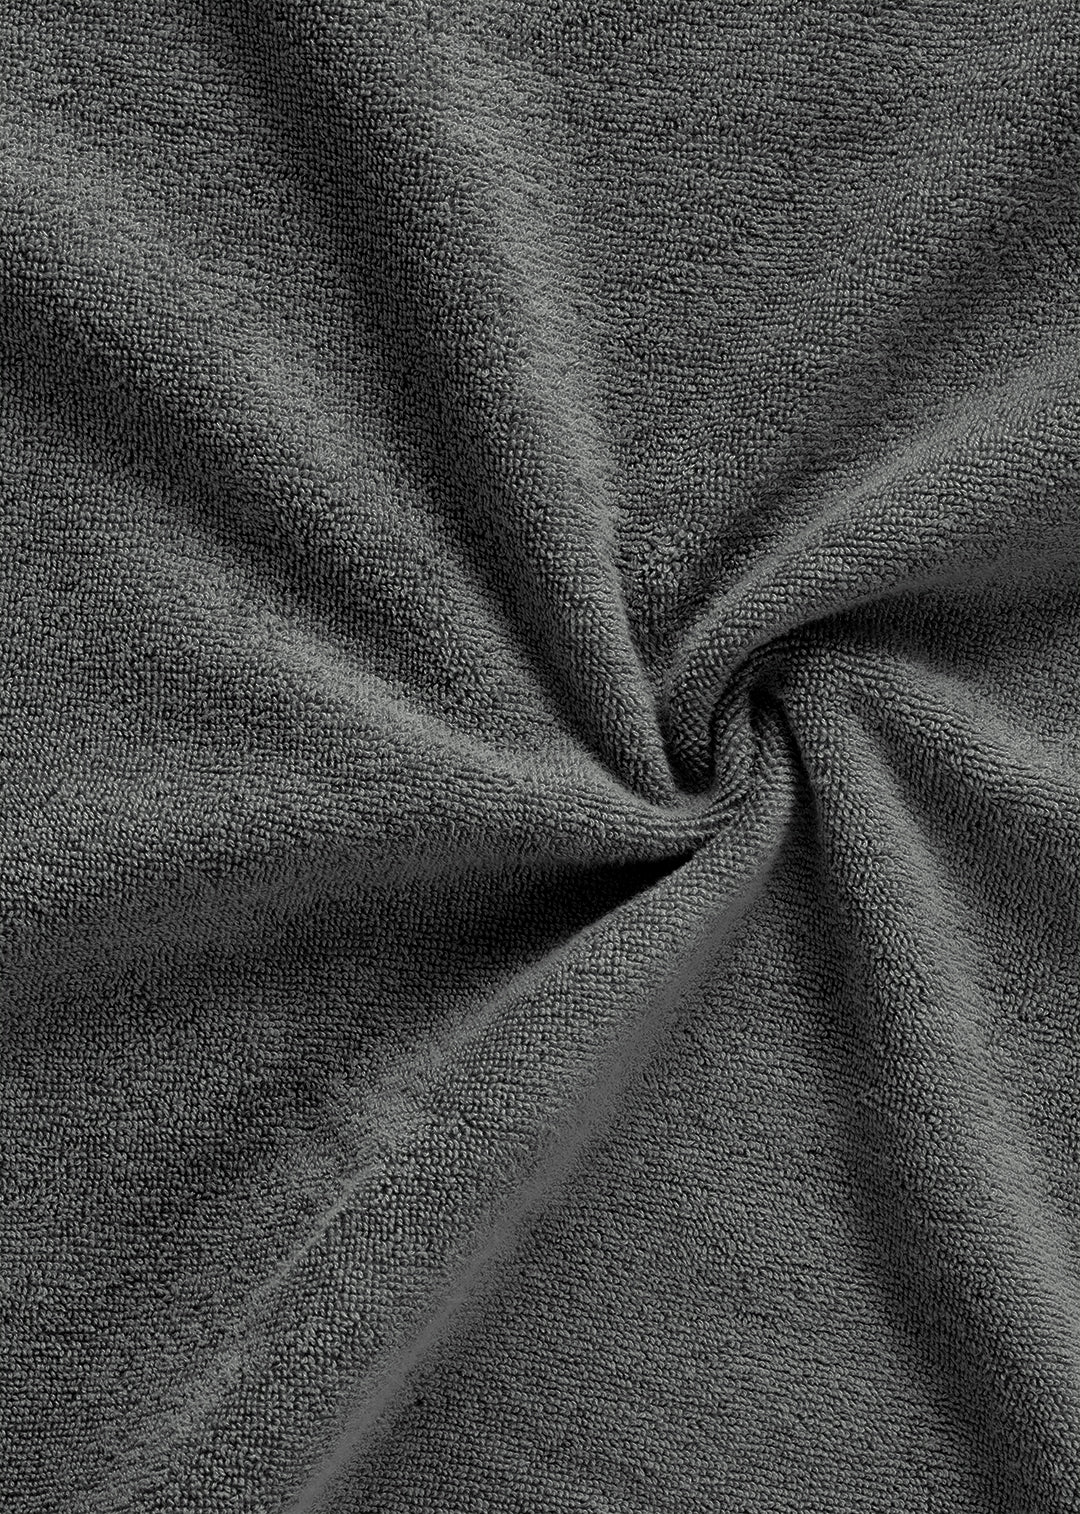 Handtuch Baumwolle Anthrazit 100 x 150 cm